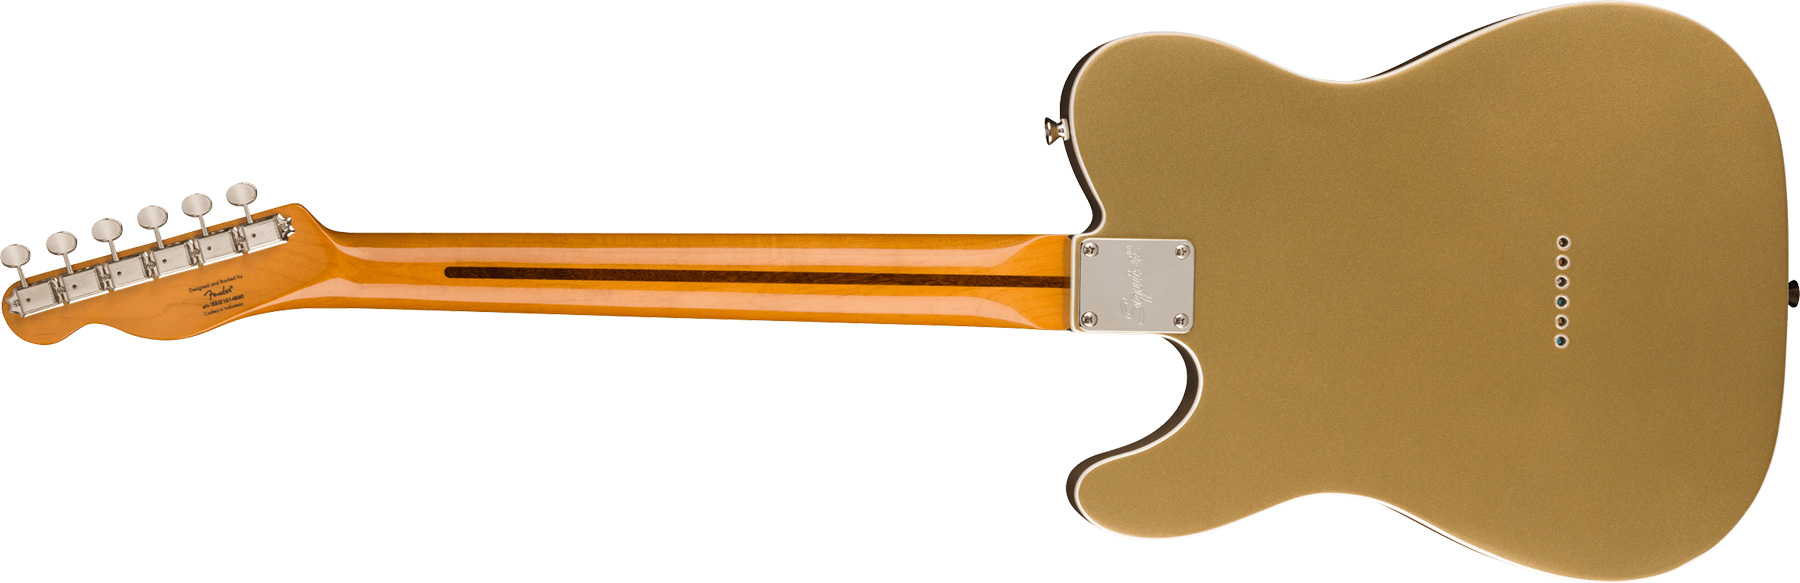 Squier Tele '60s Thinline Parchment Pickguard Classic Vibe Fsr 2s Ht Mn - Aztec Gold - Tel shape electric guitar - Variation 1